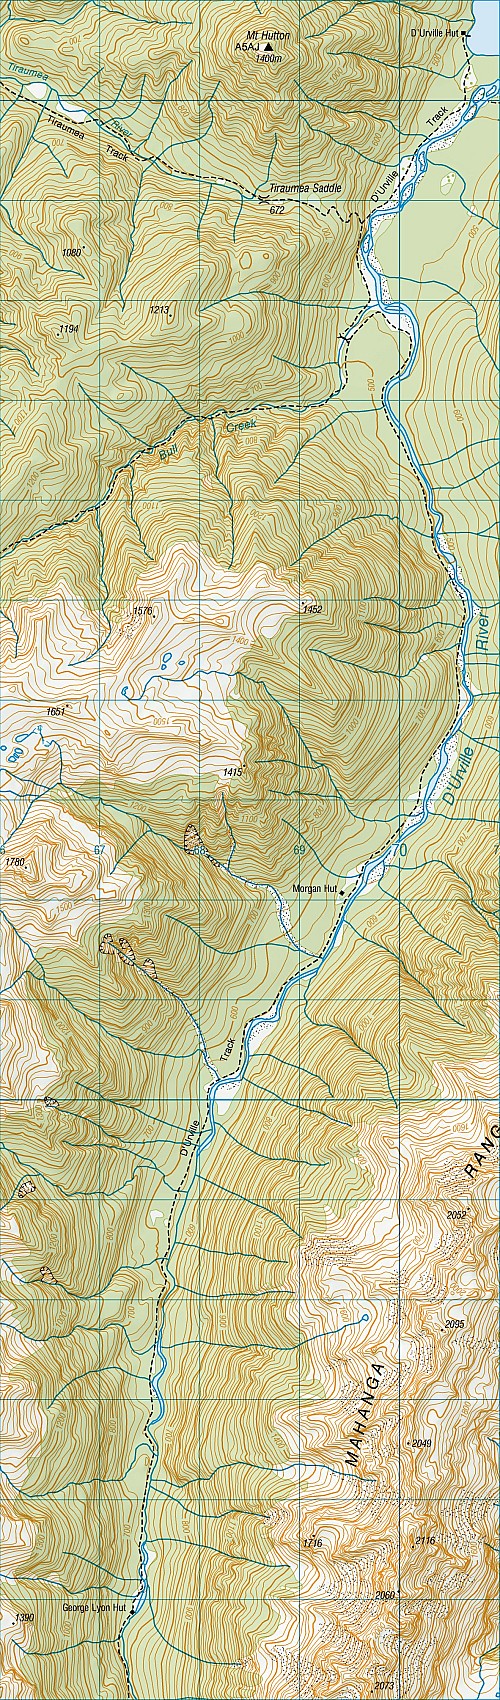 map day 5.jpeg: 1182x4018, 1692k (2010 Jul 18 19:28)